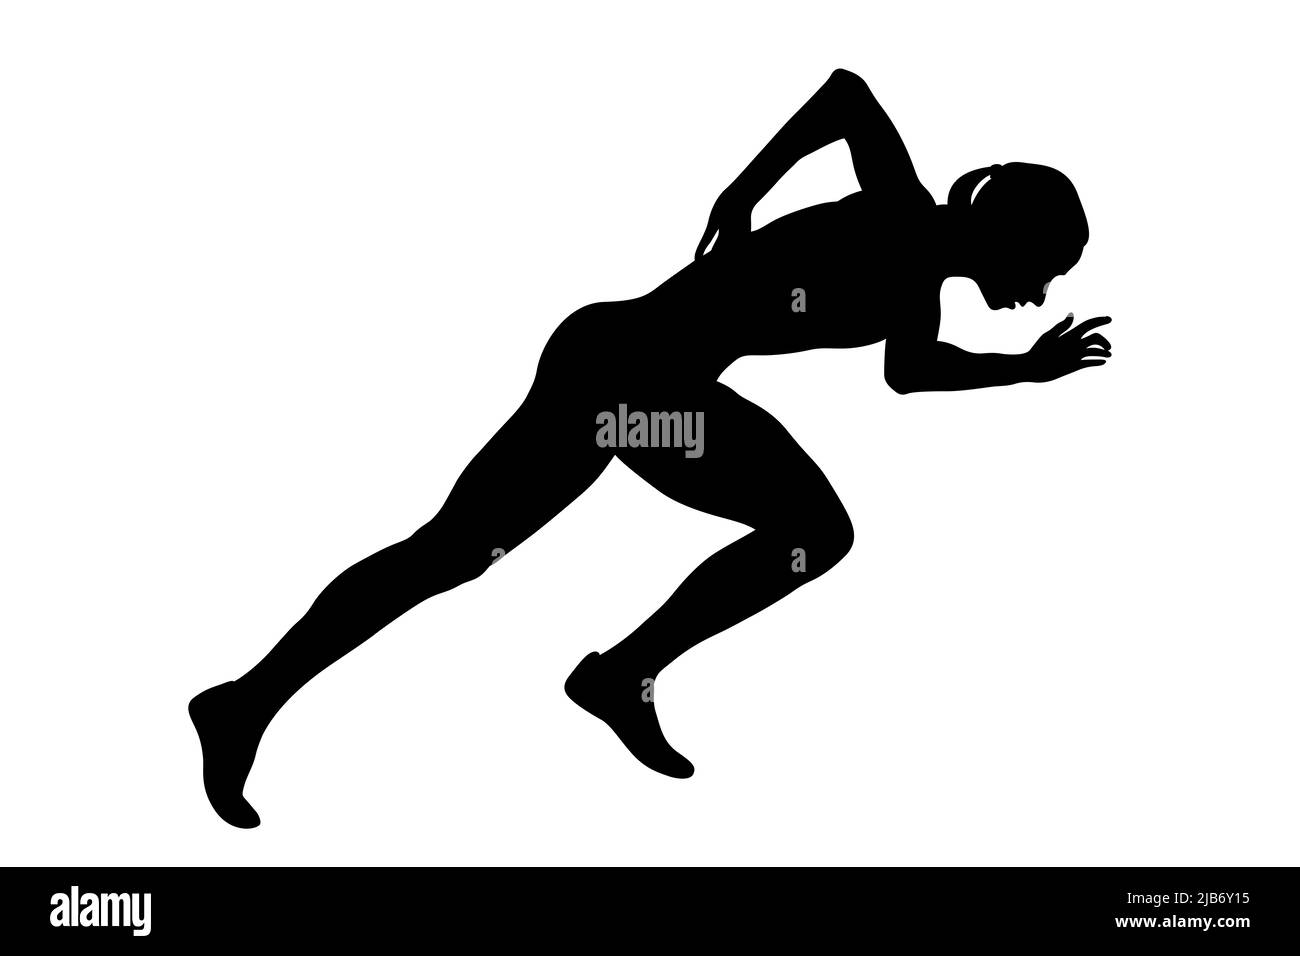 start running girl athlete black silhouette Stock Photo